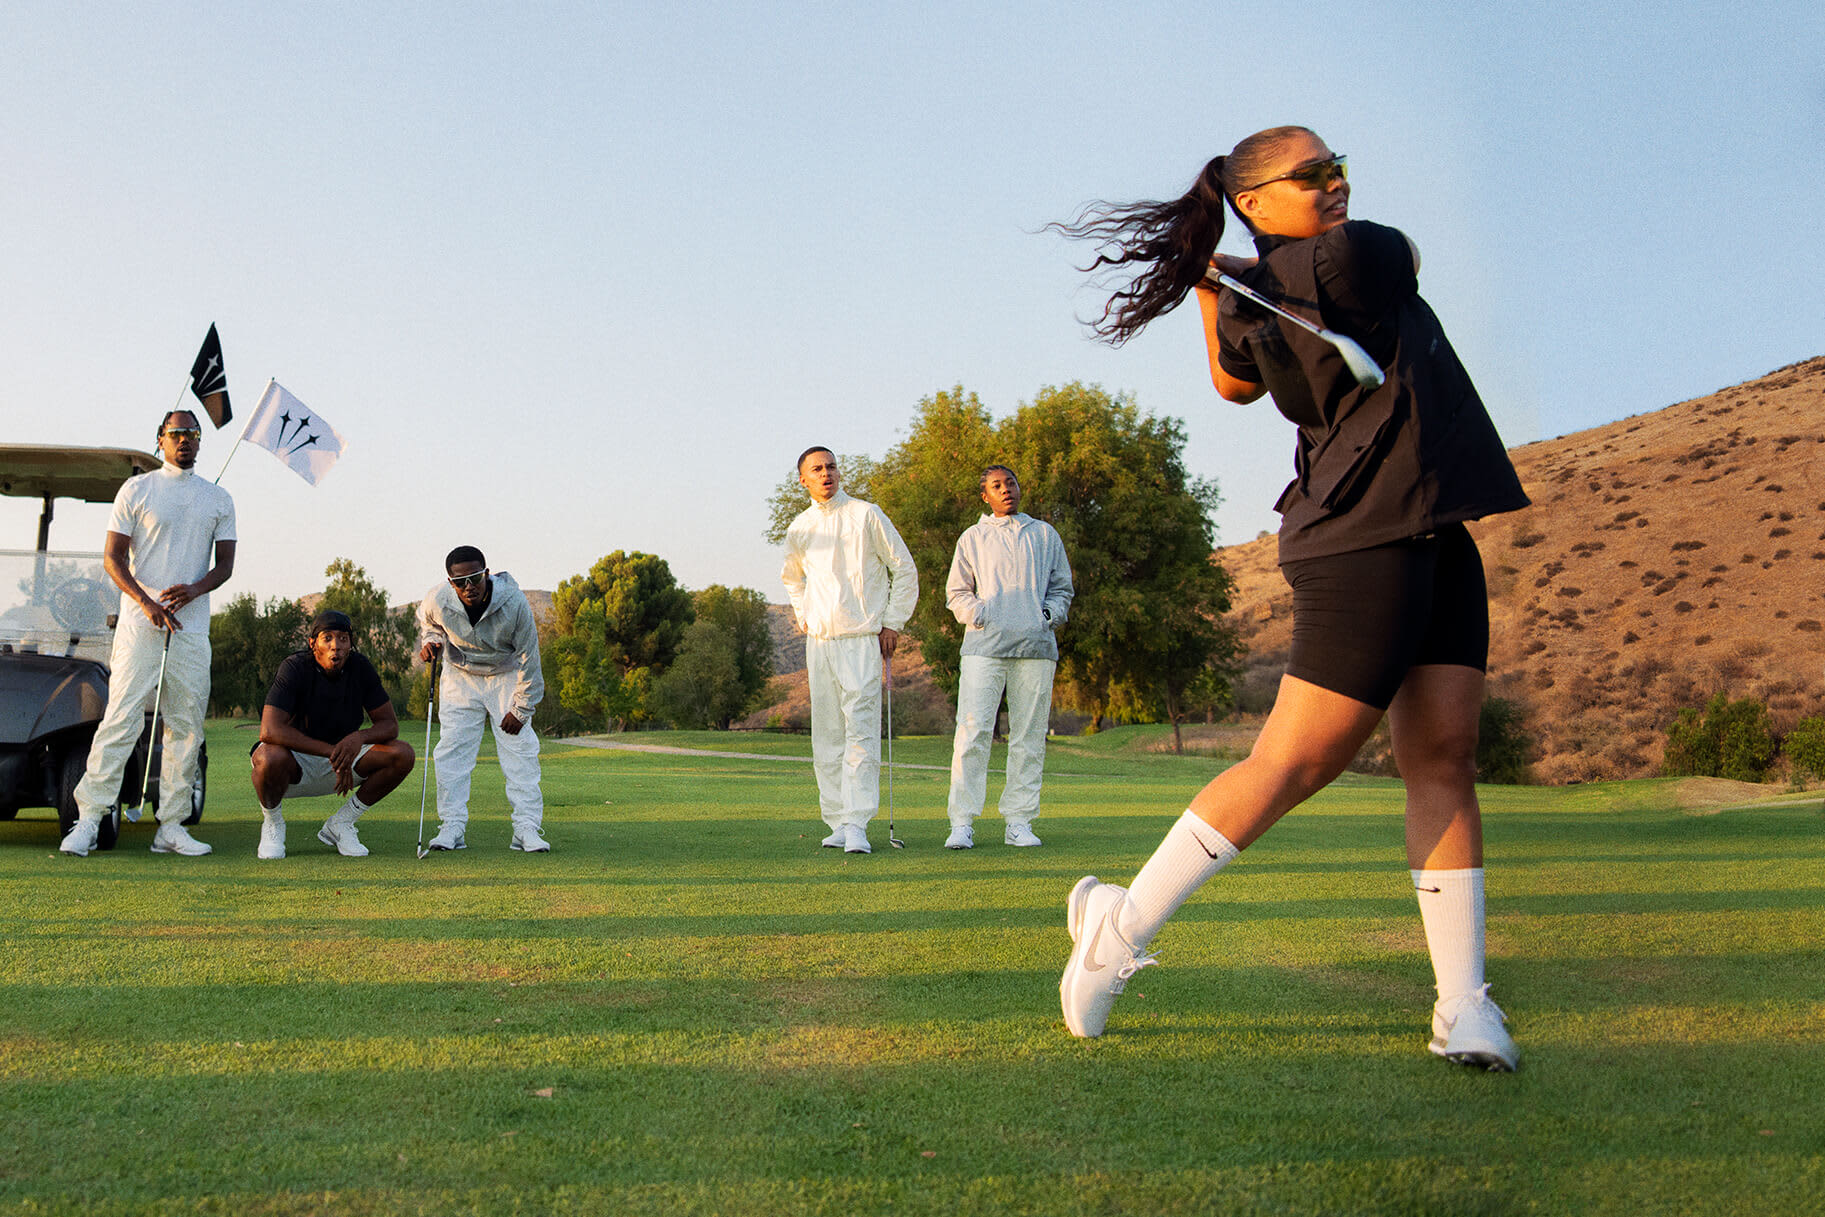 Les millors sabatilles de golf Nike per a dona